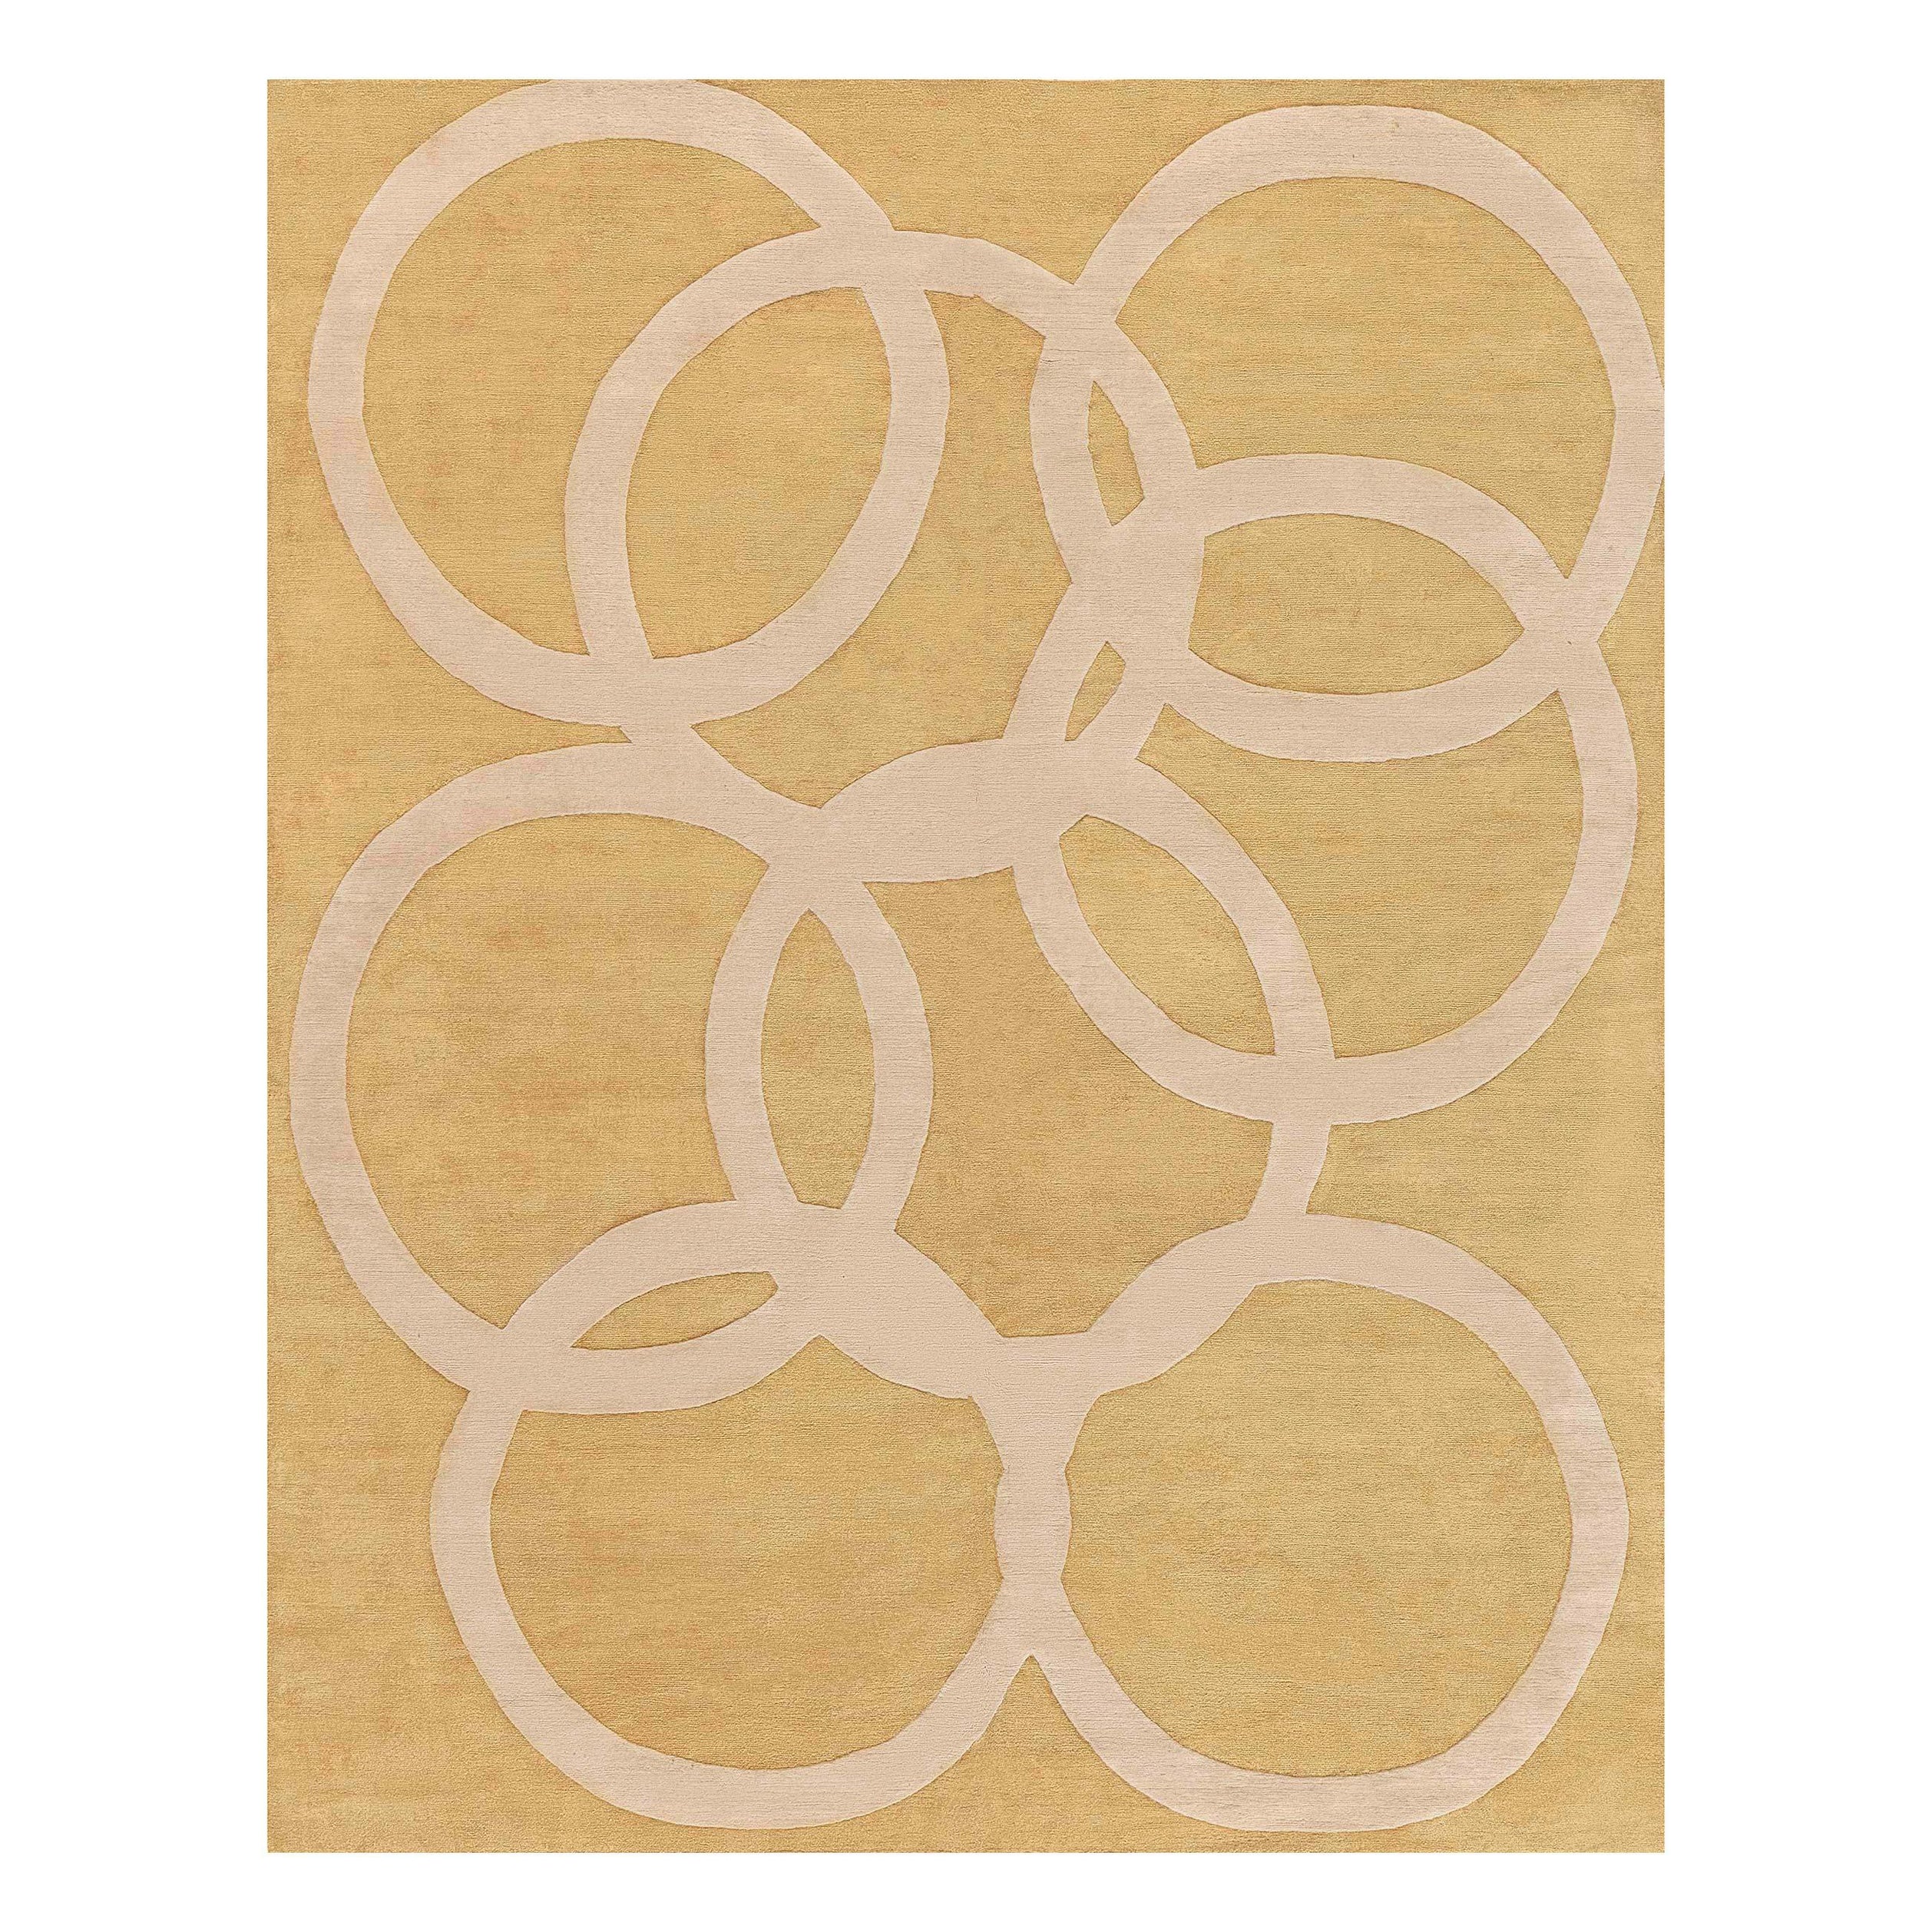 Moderner Art-Déco-Teppich mit Kreisen in Beige und Gold von Doris Leslie Blau